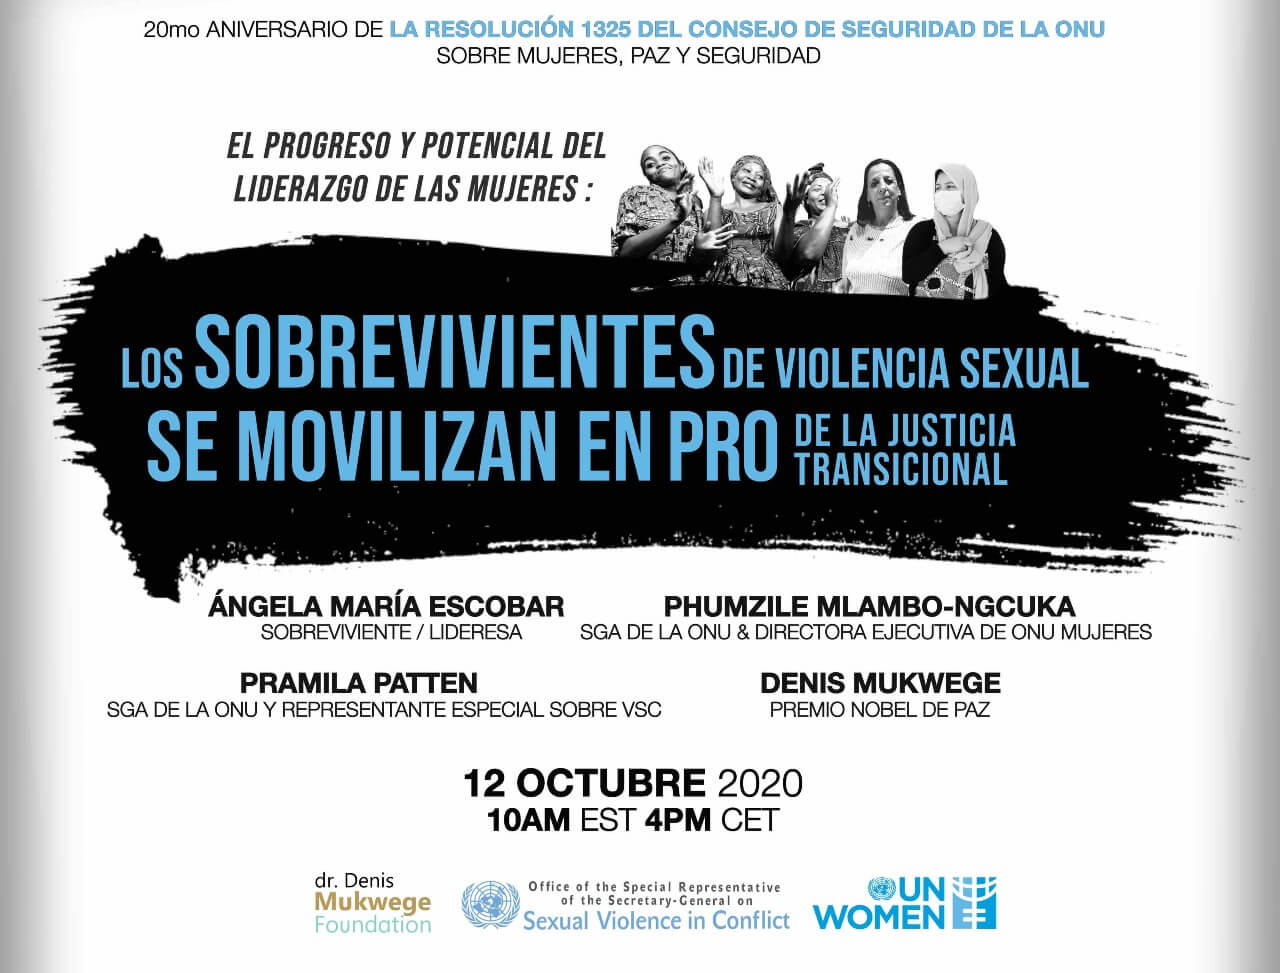 El progreso y potencial del liderazgo de las mujeres: Las sobrevivientes de violencia sexual se movilizan en pro de la justicia transicional